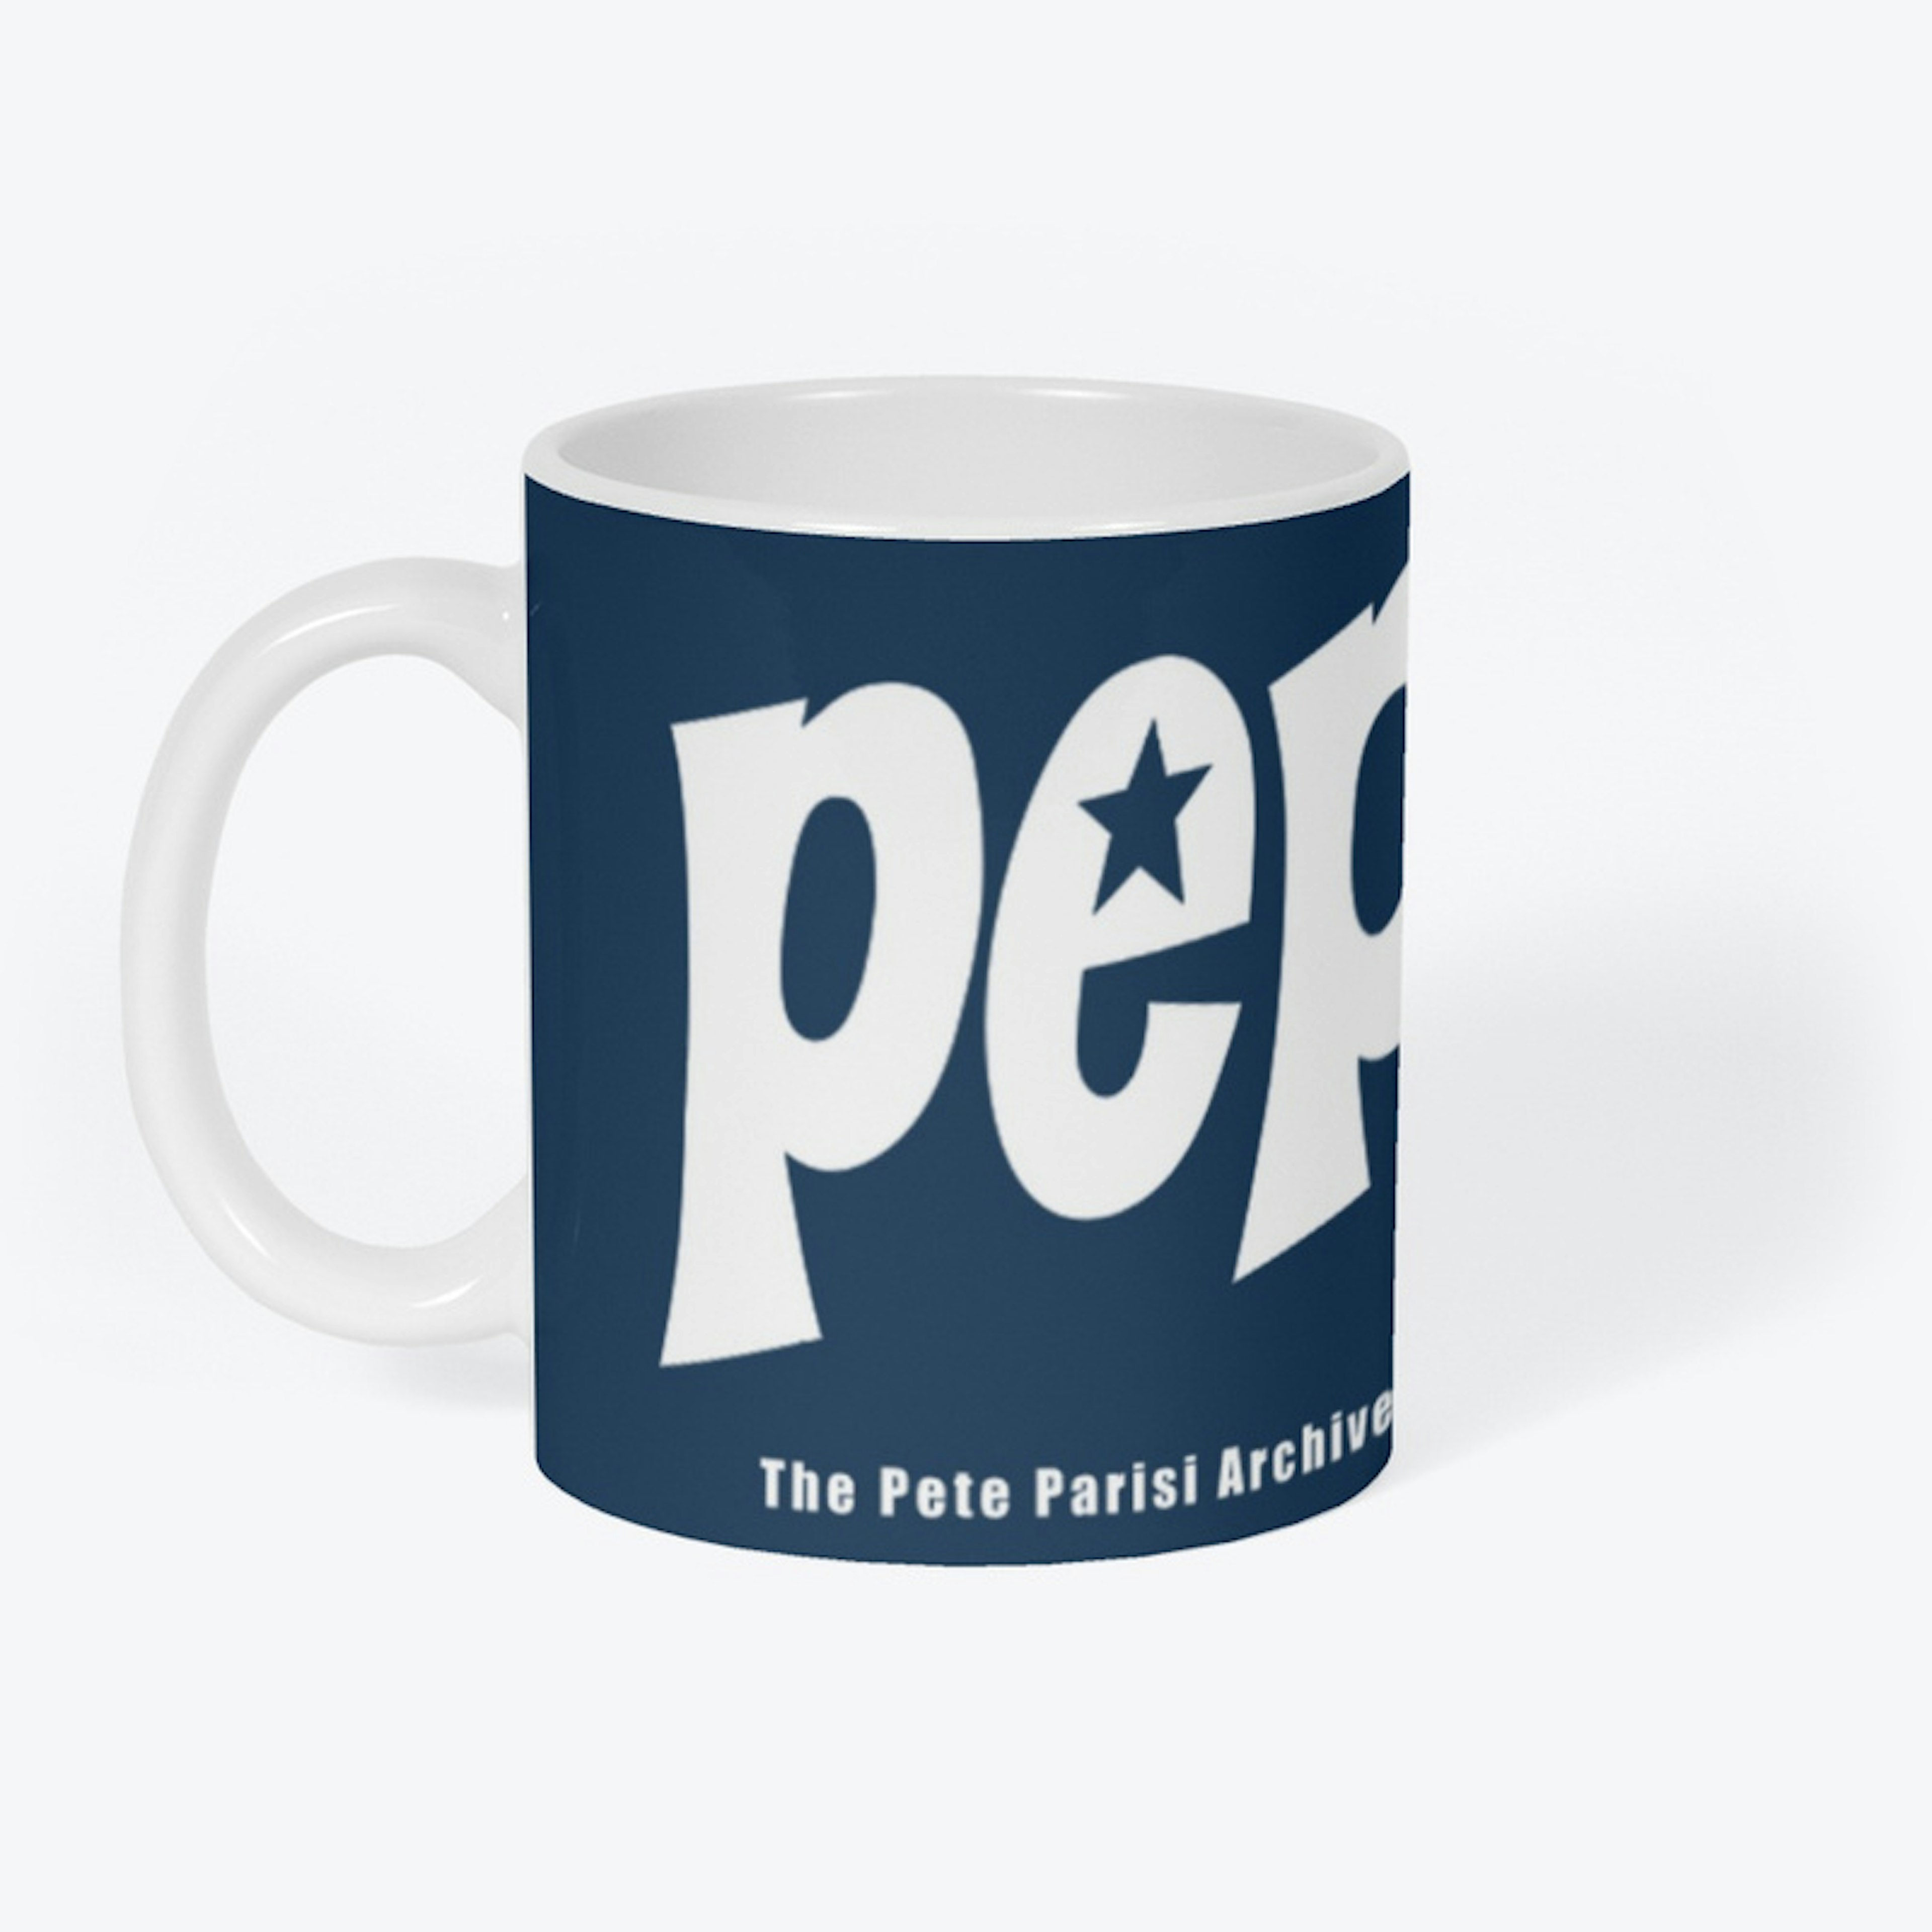 P.E.P. - The Pete Parisi Archives 